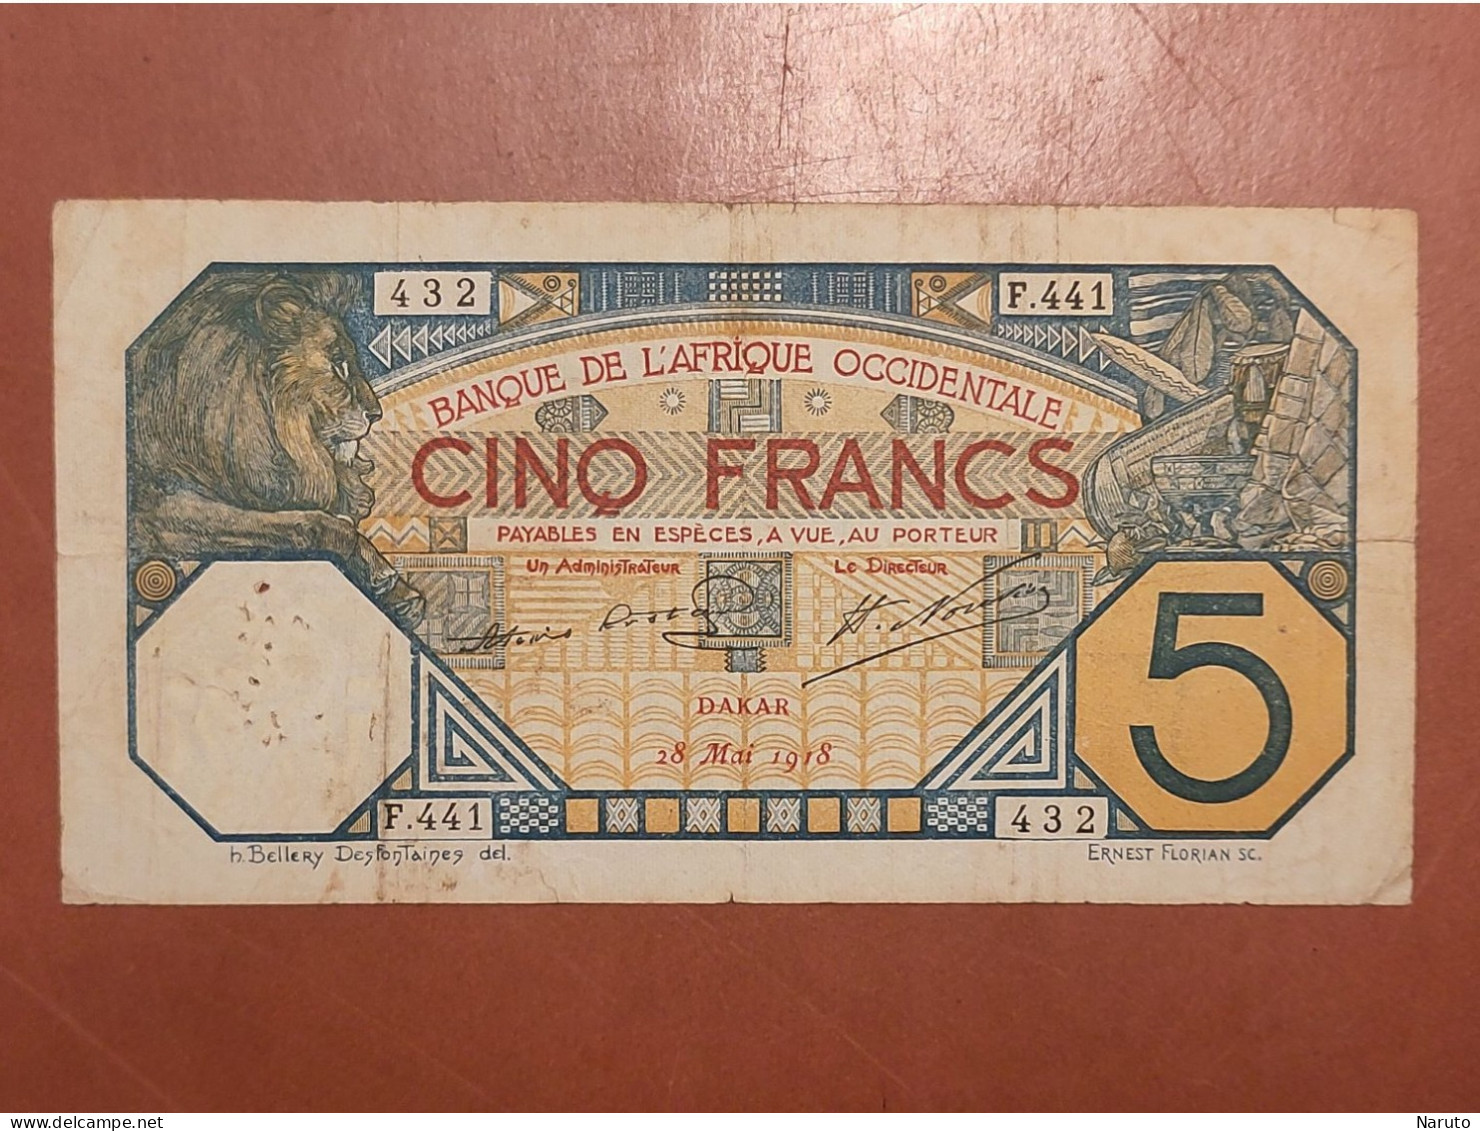 Billet De 5 Francs De La Banque De L'Afrique Occidentale, Dakar, 28 Mai 1918 - Lots & Kiloware - Banknotes